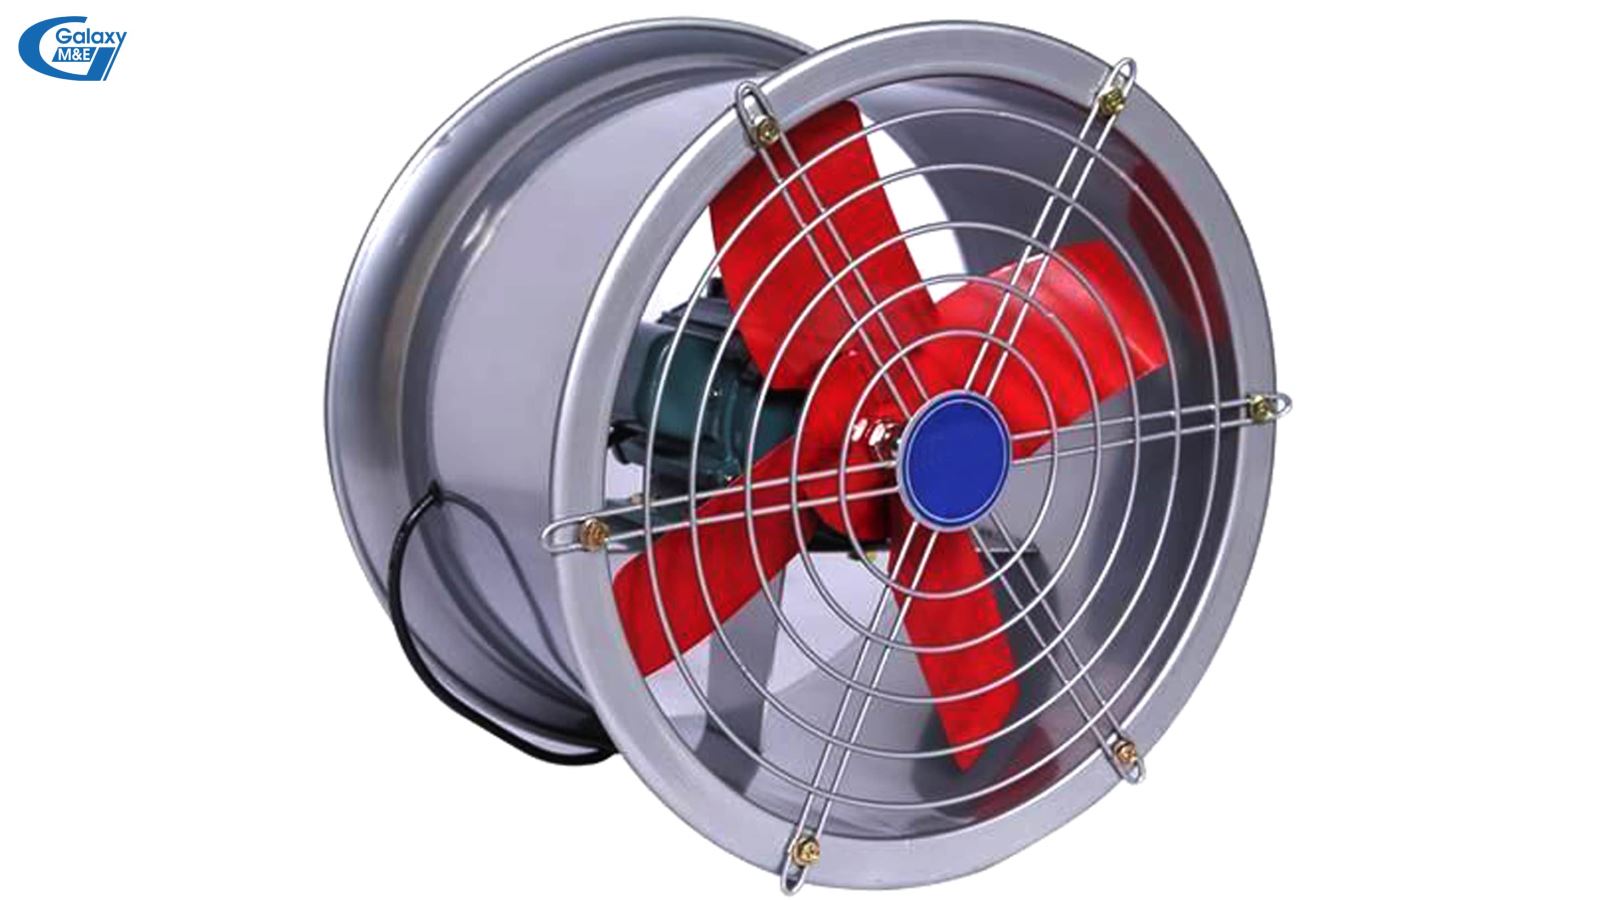 Lưu lượng gió của quạt hướng trục dạng trục quay chỉ bằng 1/5 so với dạng sử dụng đai truyền lực.